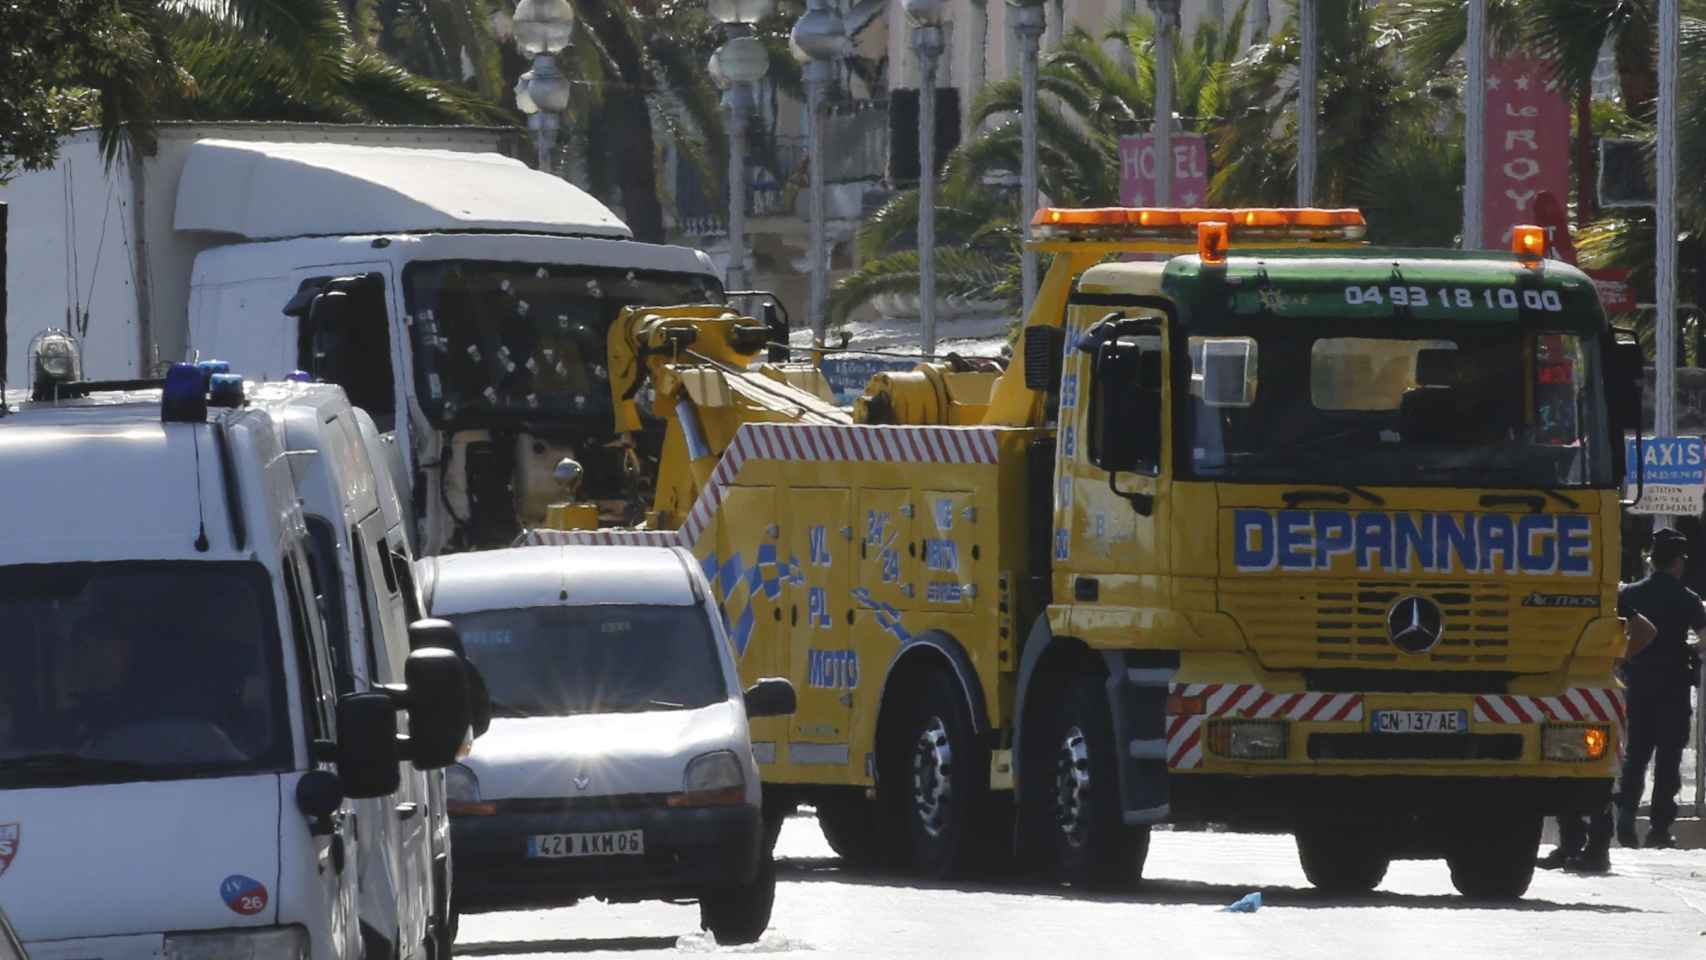 La grua arrastra al camión con el que se cometió el ataque de Niza